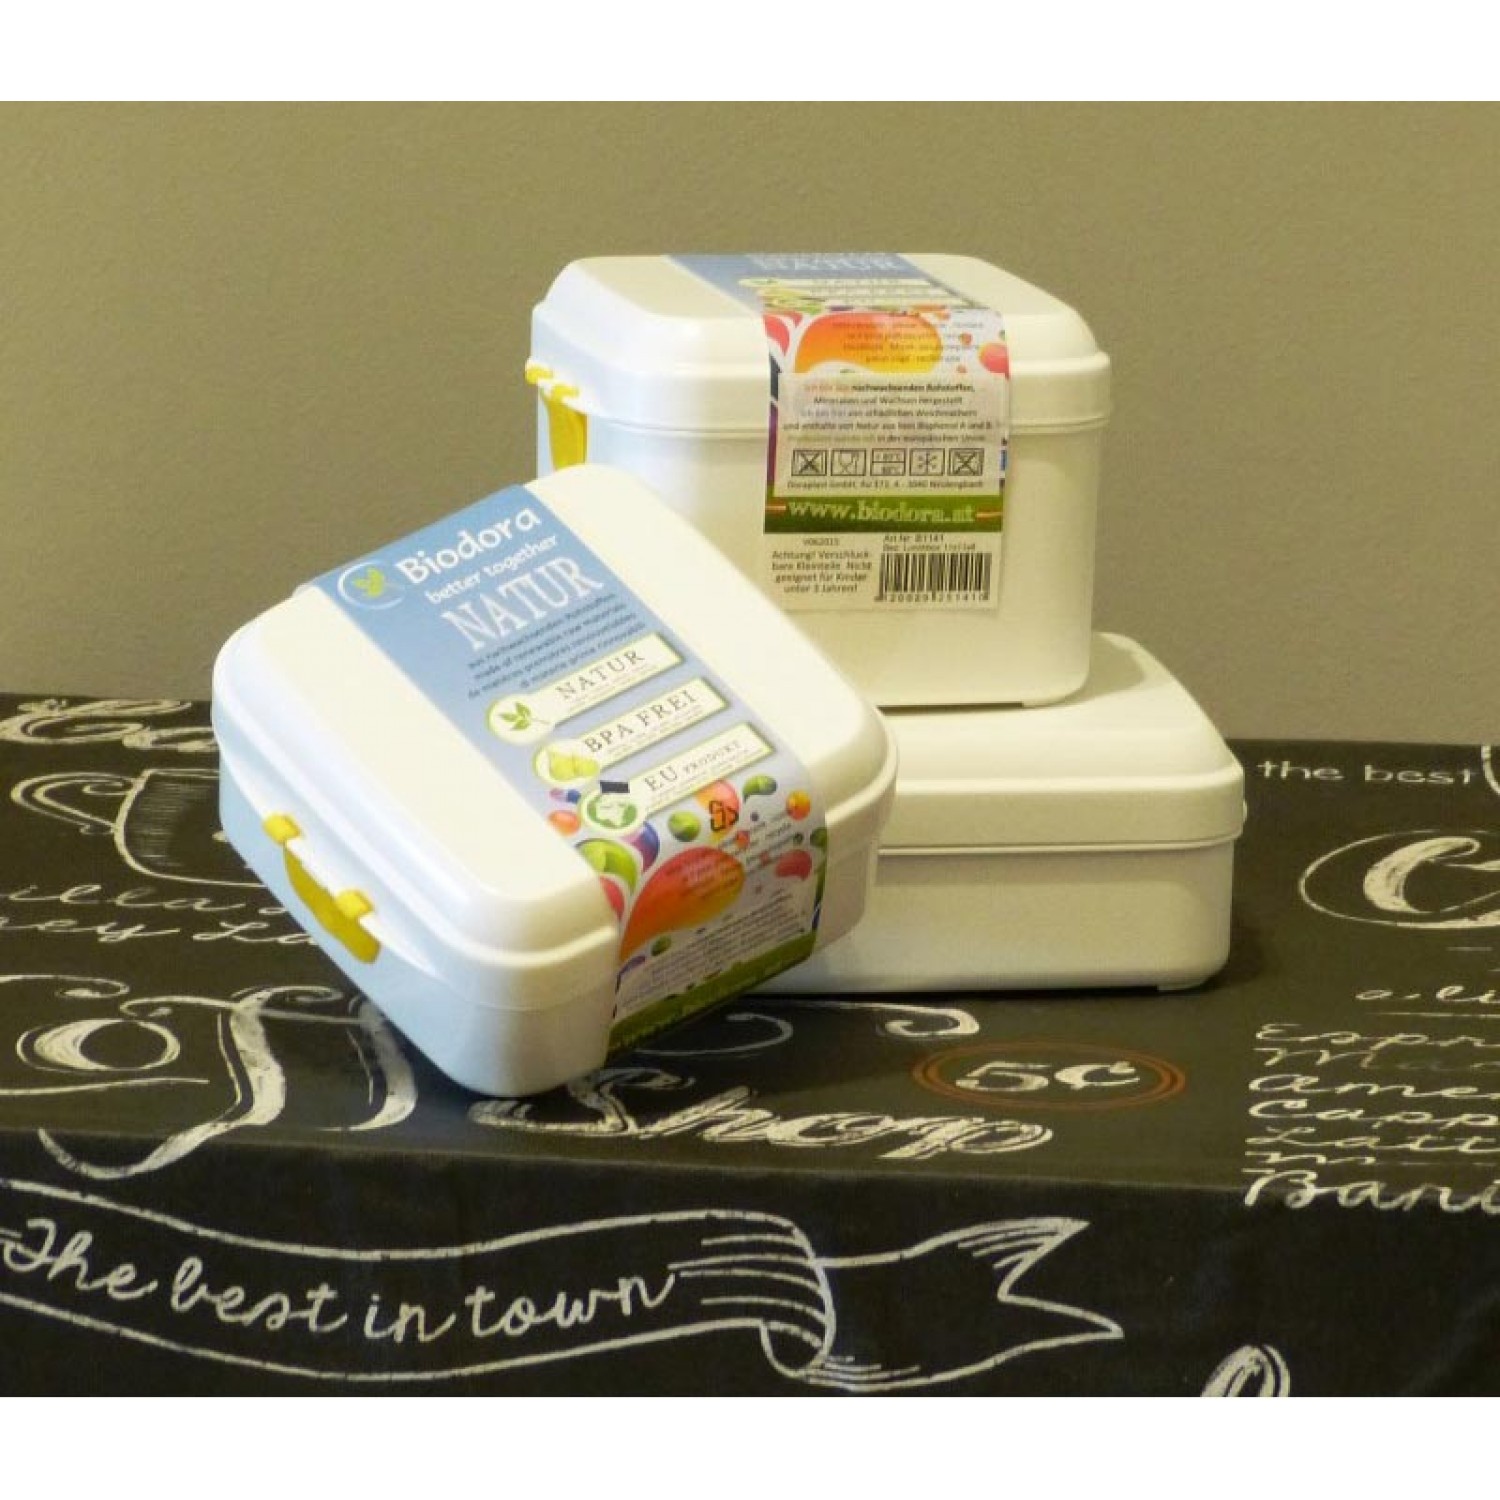 Aufbewahrungsdose & Lunchbox Set aus Biokunststoff » Biodora